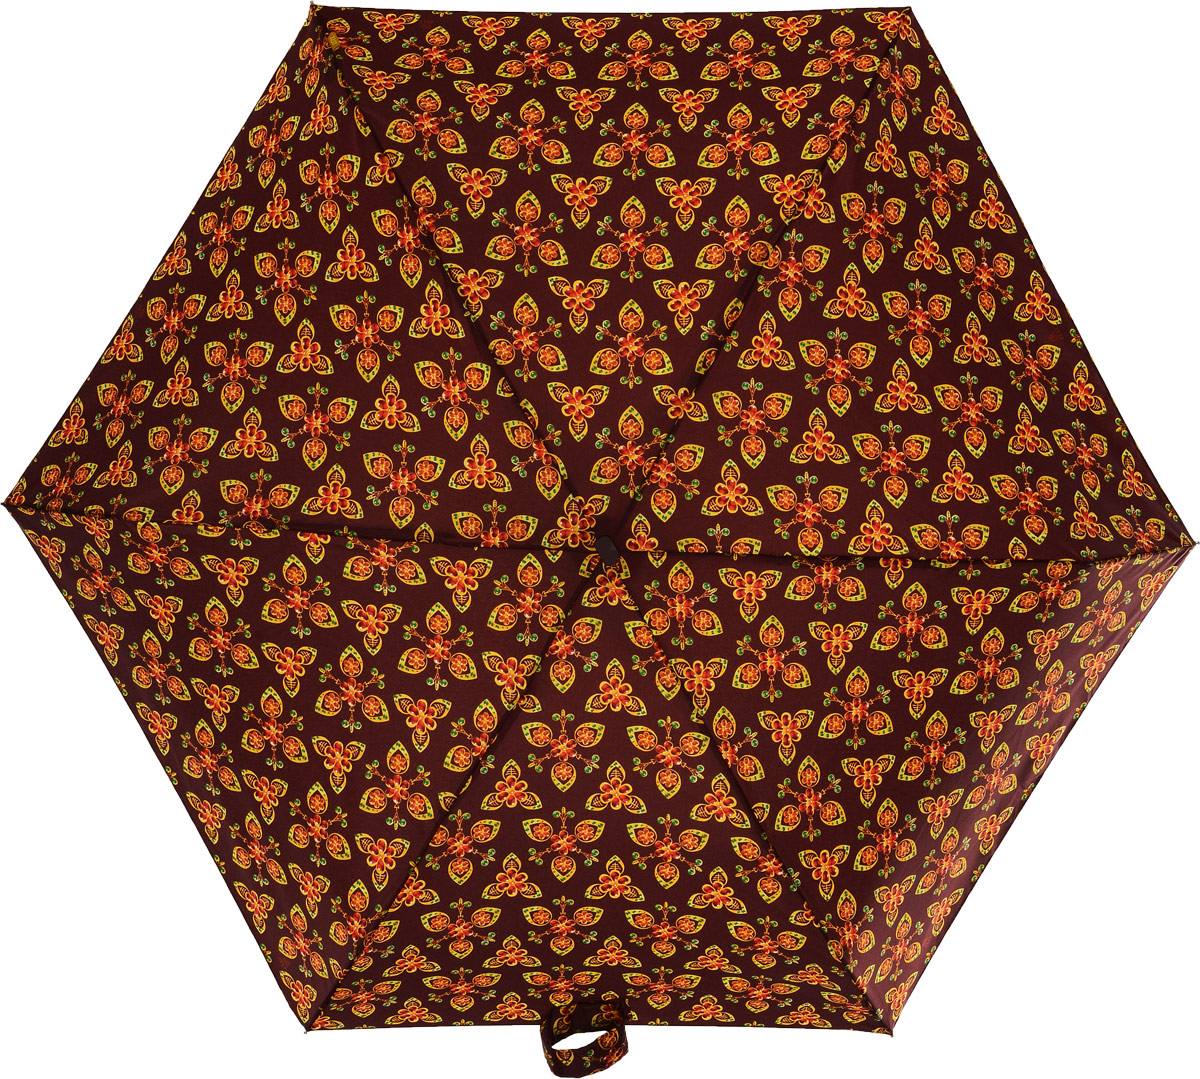 Зонт женский Zest, механический, 5 сложений, цвет: бордовый, оранжевый, желтый, зеленый. 25518-654